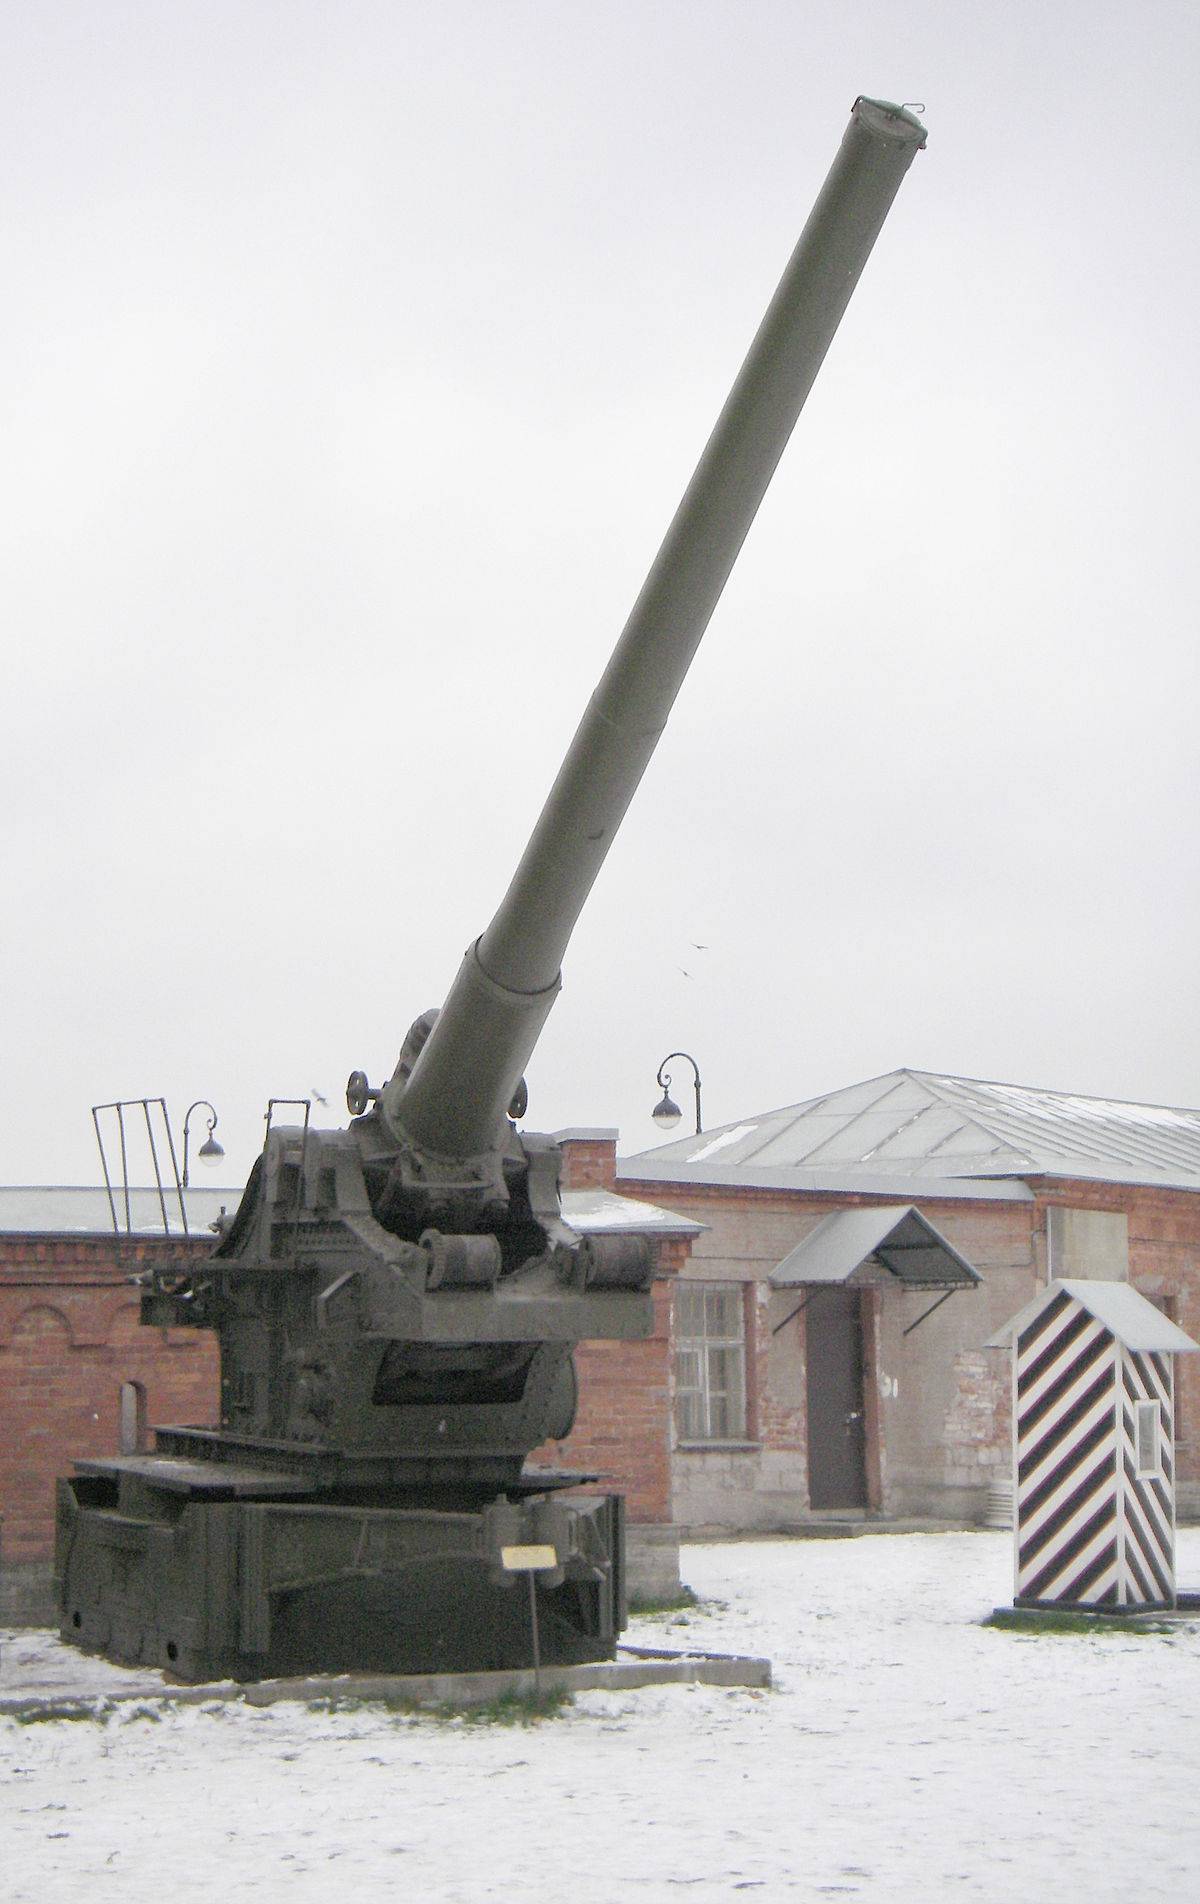 107-мм дивизионная пушка образца 1940 года (м-60) — википедия переиздание // wiki 2